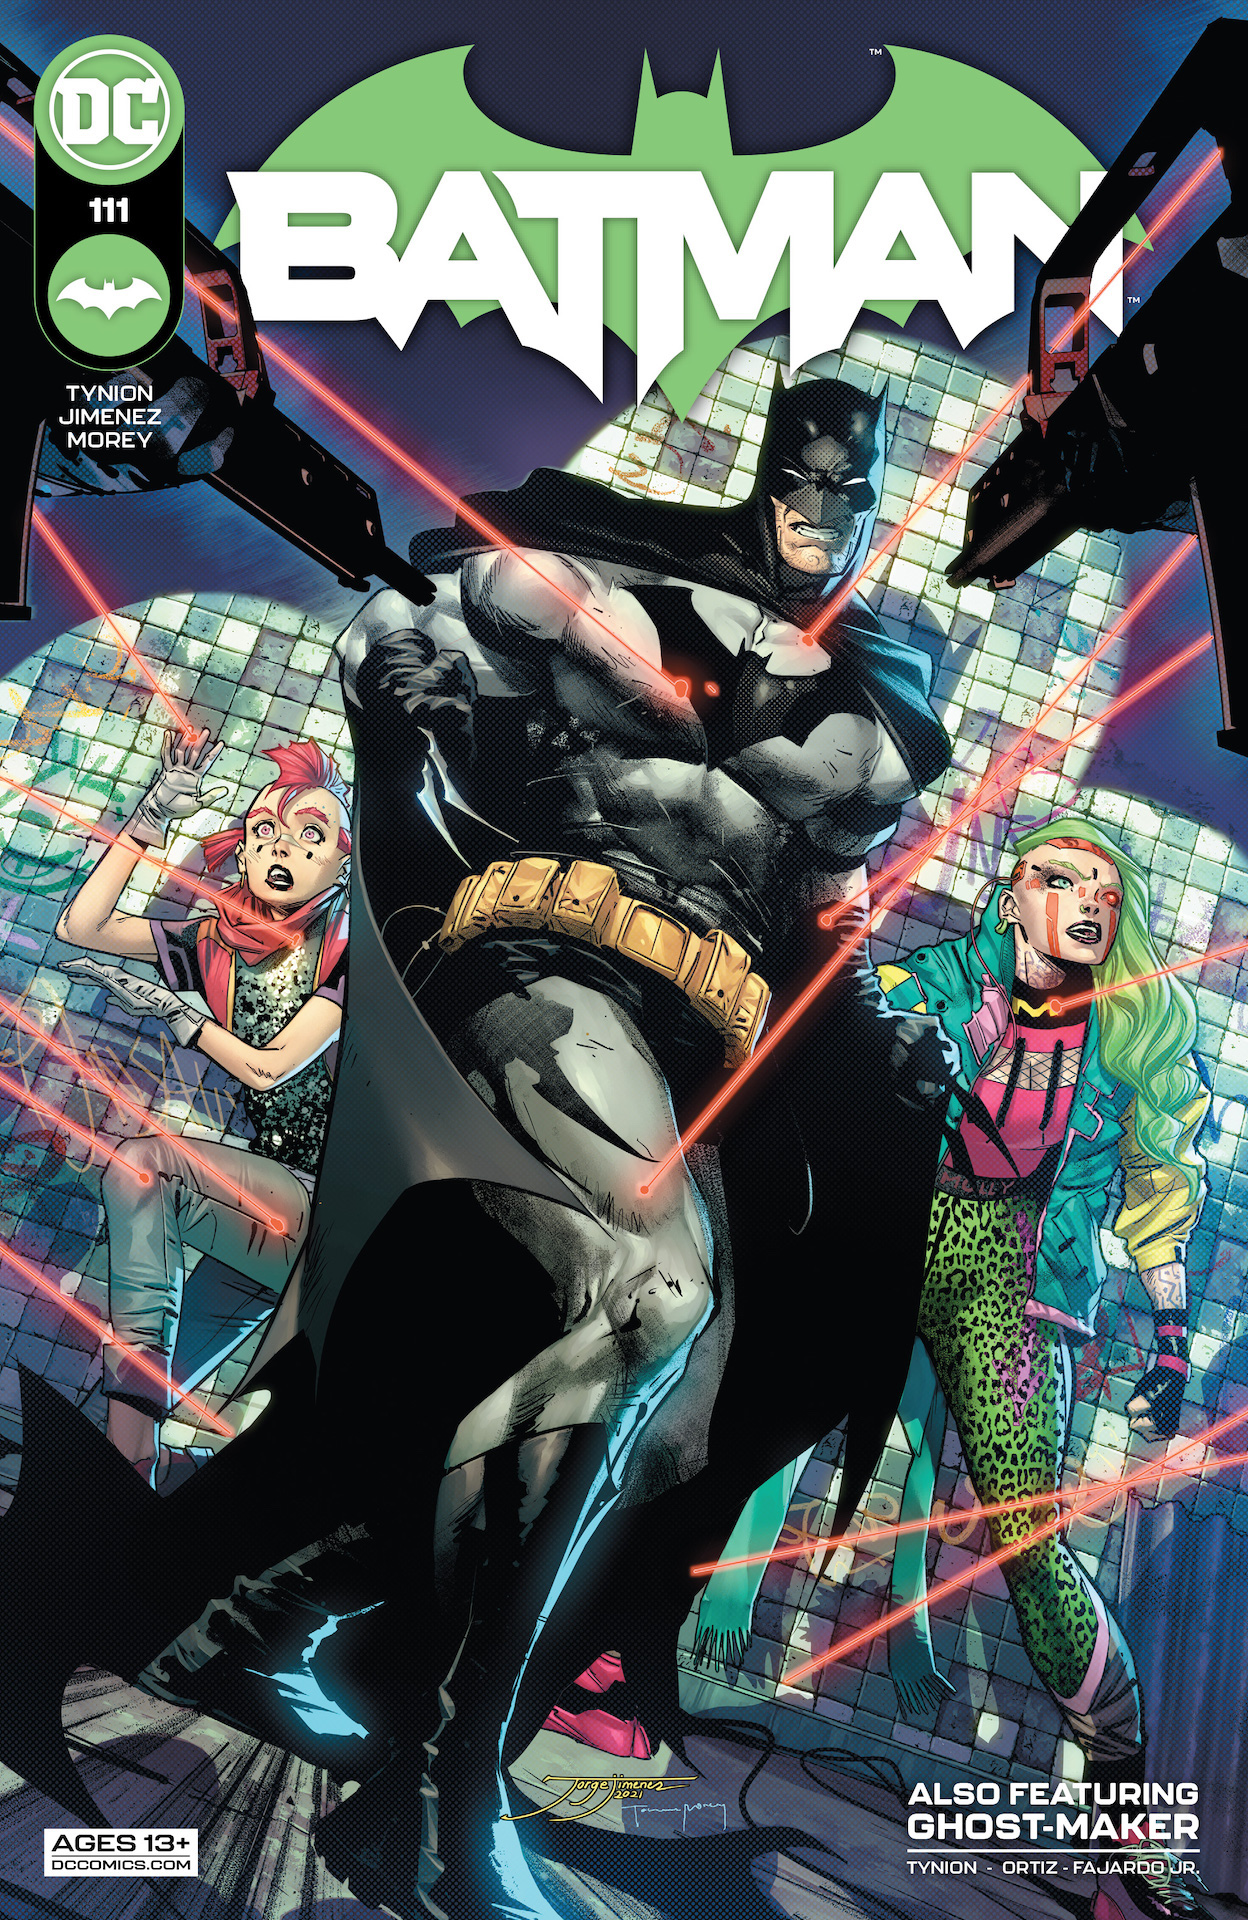 DC Preview: Batman #111